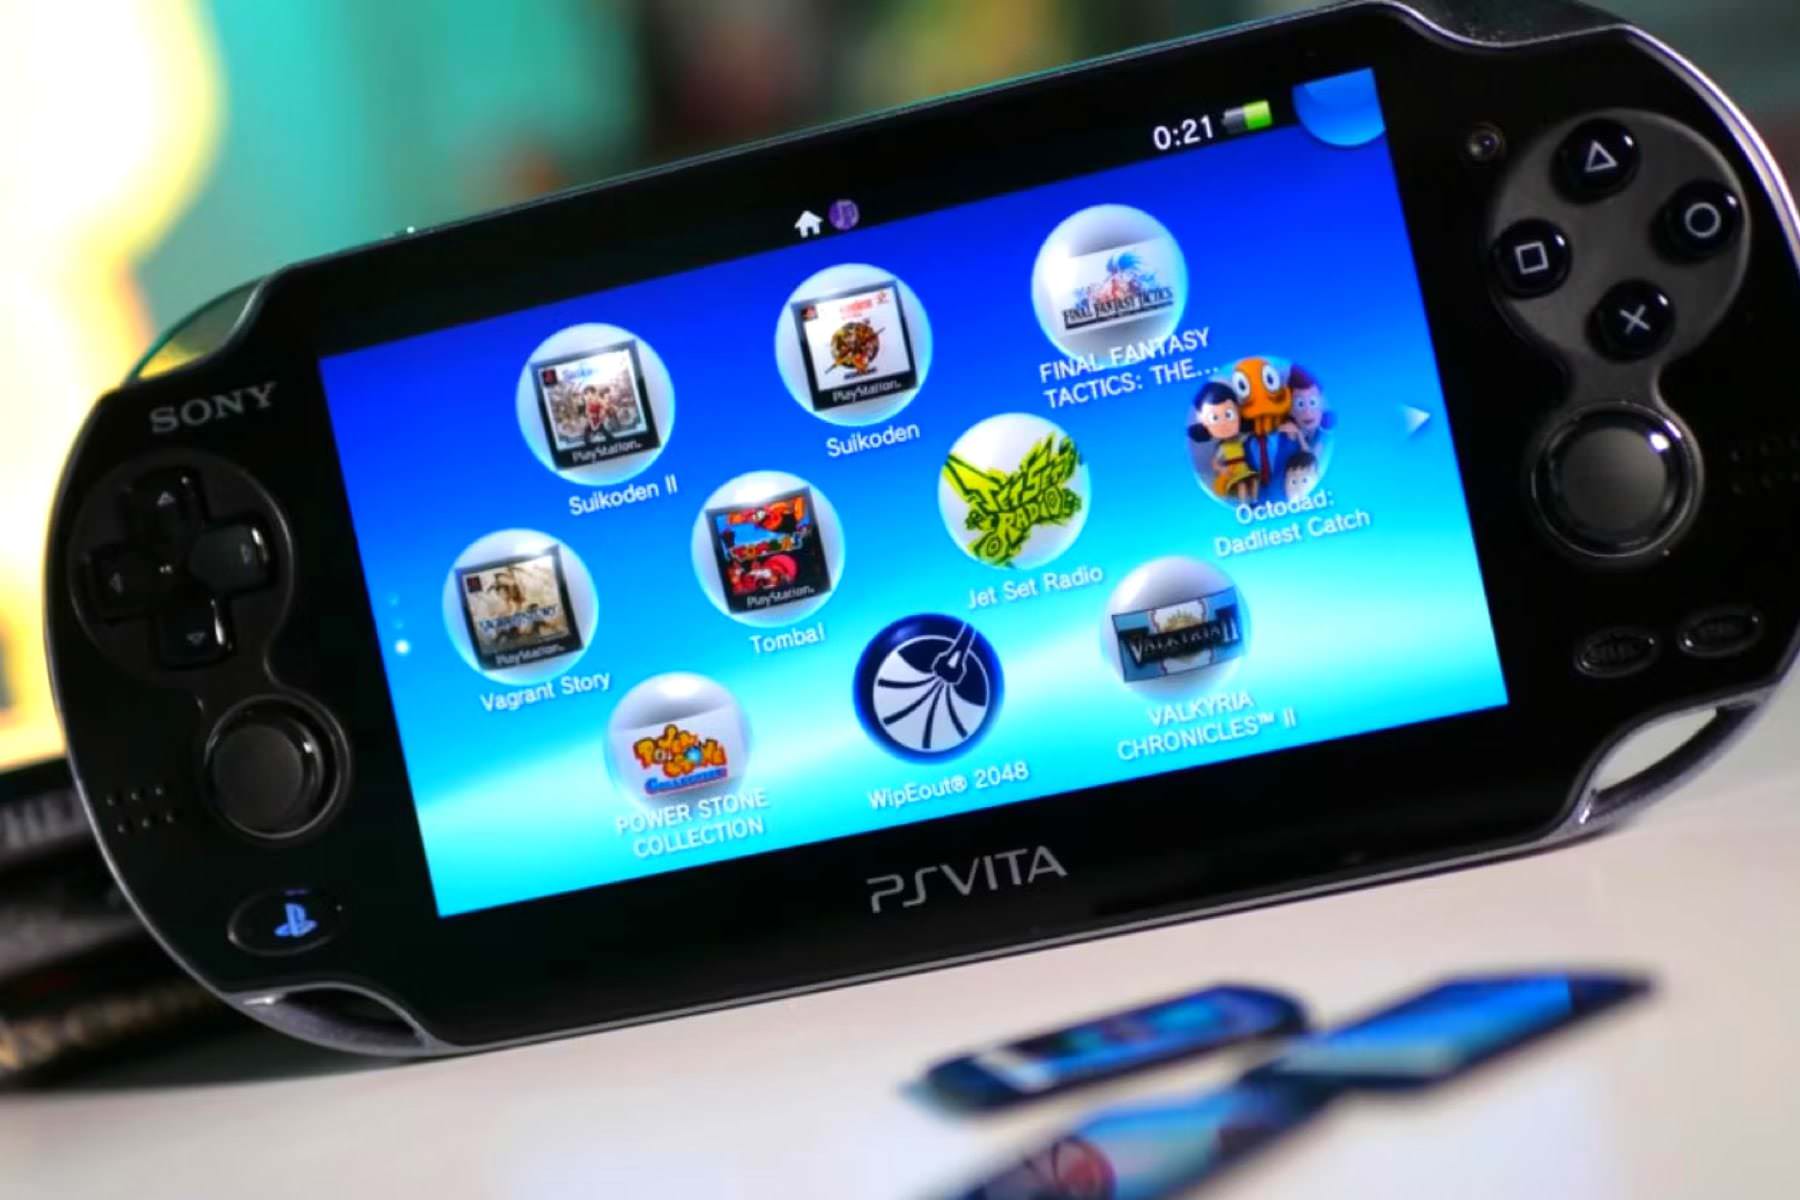 Эмулятор портативной игровой приставки PlayStation Vita вышел для Android. Его можно скачать бесплатно